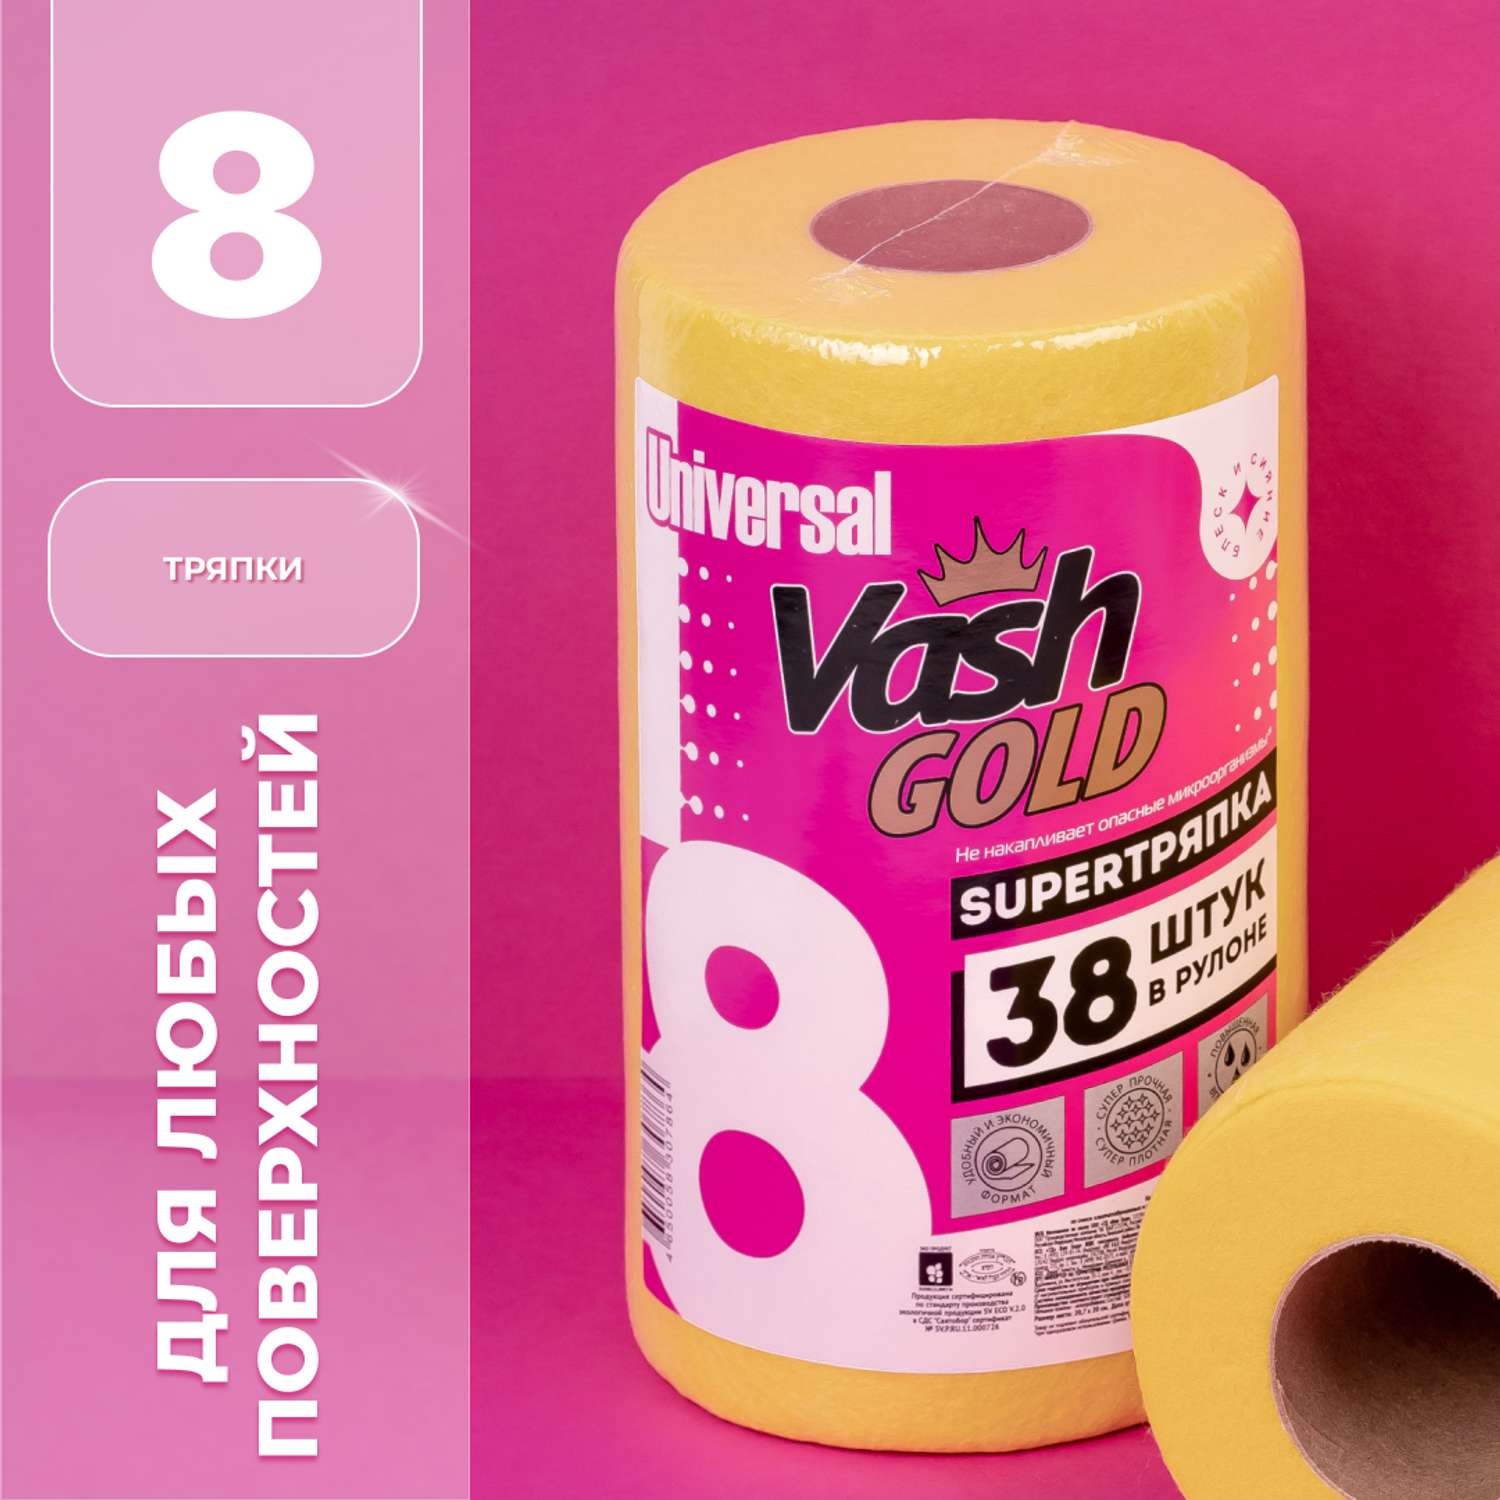 Тряпки Vash Gold универсальные 38 листов в рулоне - фото 1